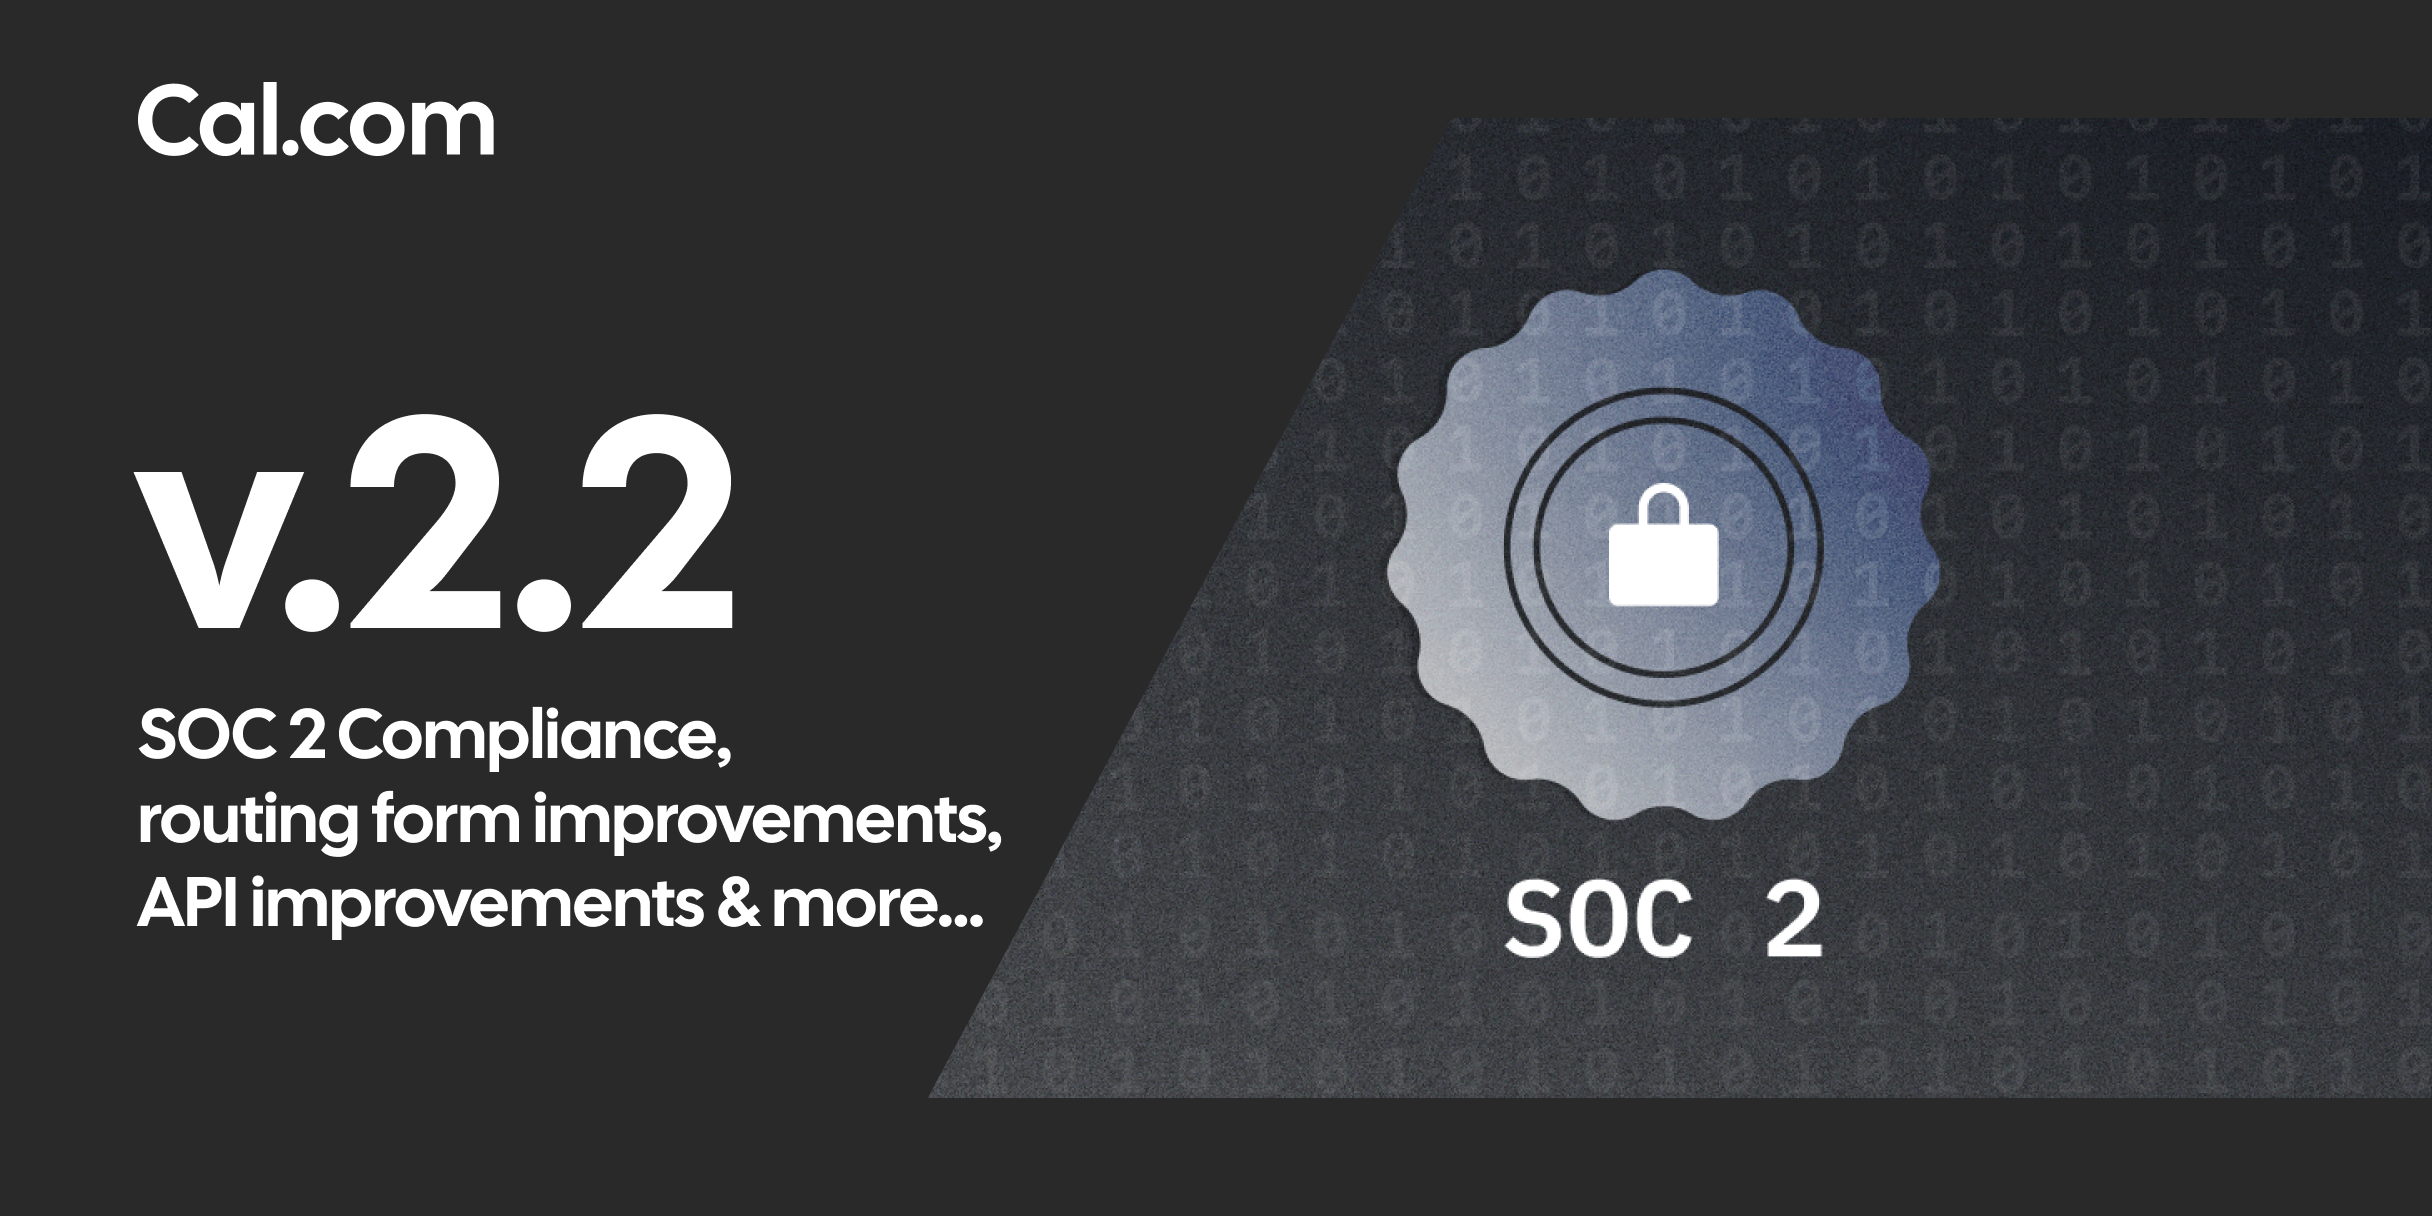 Cal.com v2.2 - SOC 2 Compliance, routing form improvements, API improvements & more...